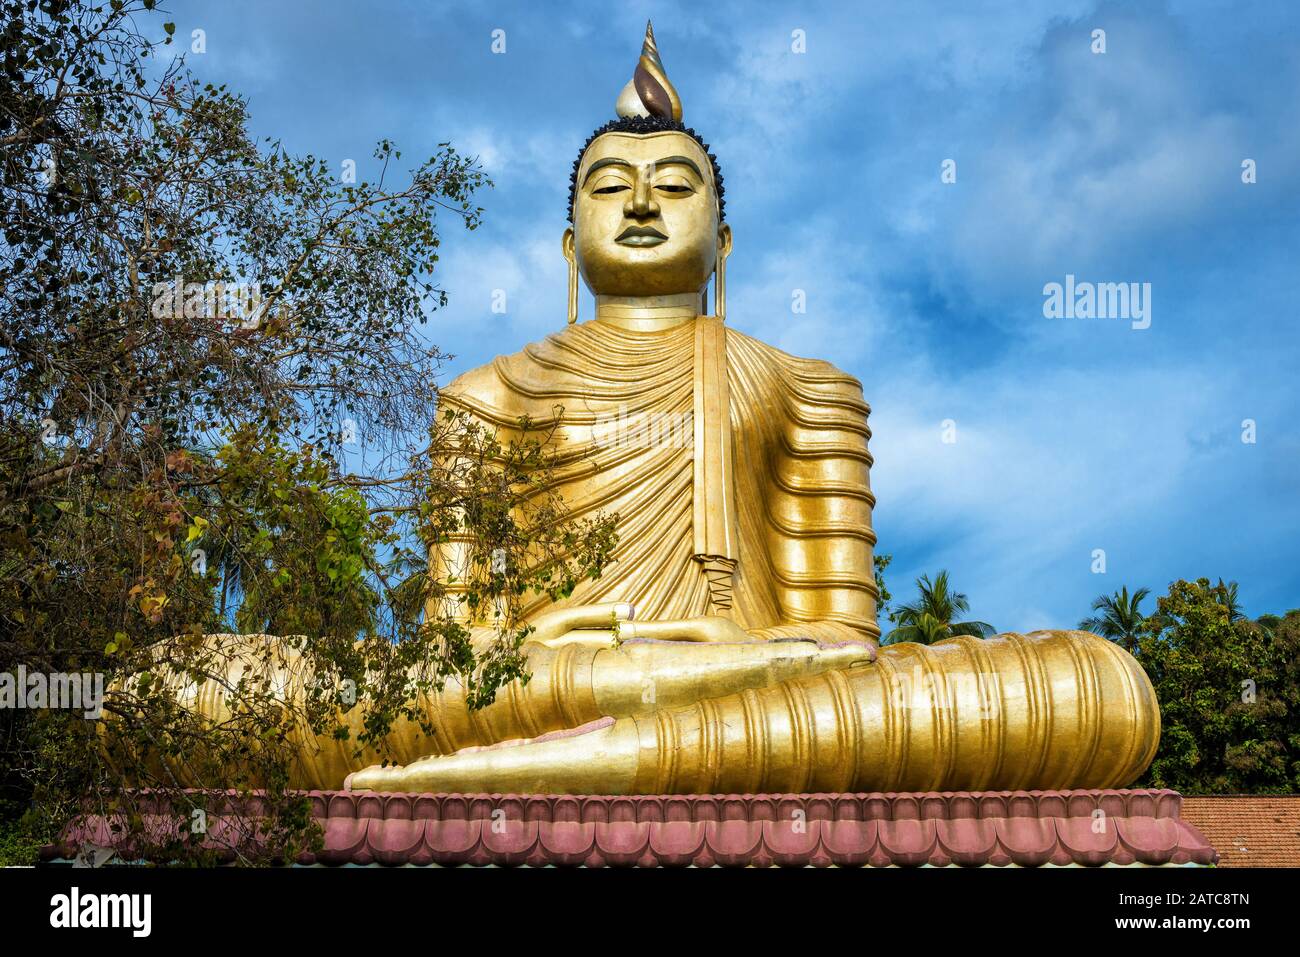 Bouddha dans le vieux temple de Wewurukannala Vihara dans la ville de Dickwella, Sri Lanka. Une grande statue de Bouddha assis de 50 m de haut est la plus grande du Sri Lanka. Bonjour Banque D'Images